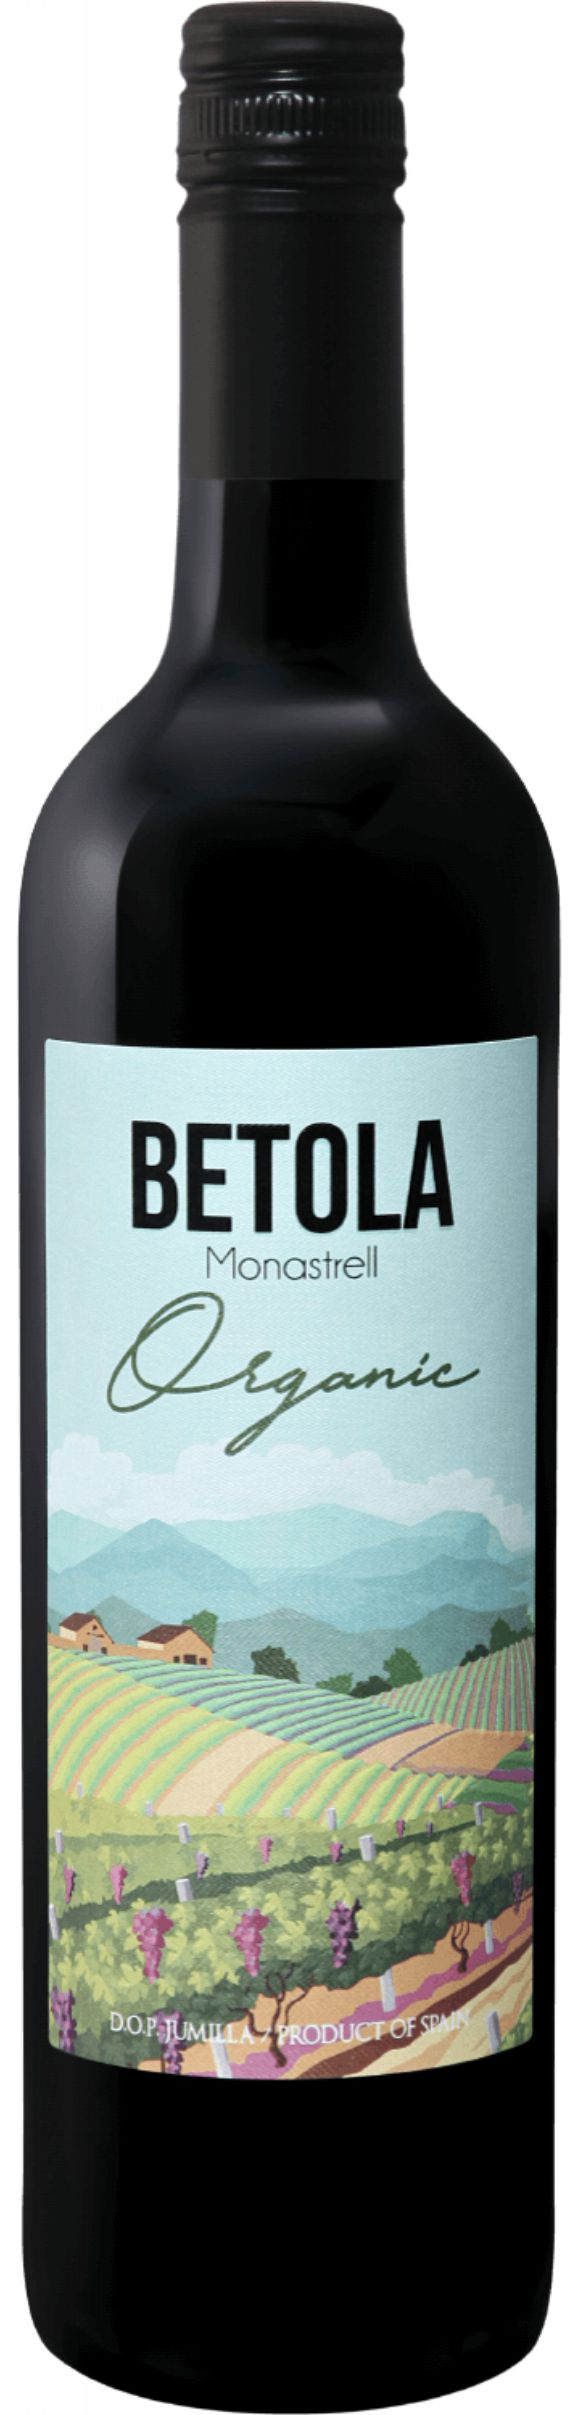 Вино Бетола Тинто Монастрель  2017 красное сухое  креп 14,5%, емк. 0,75 л.